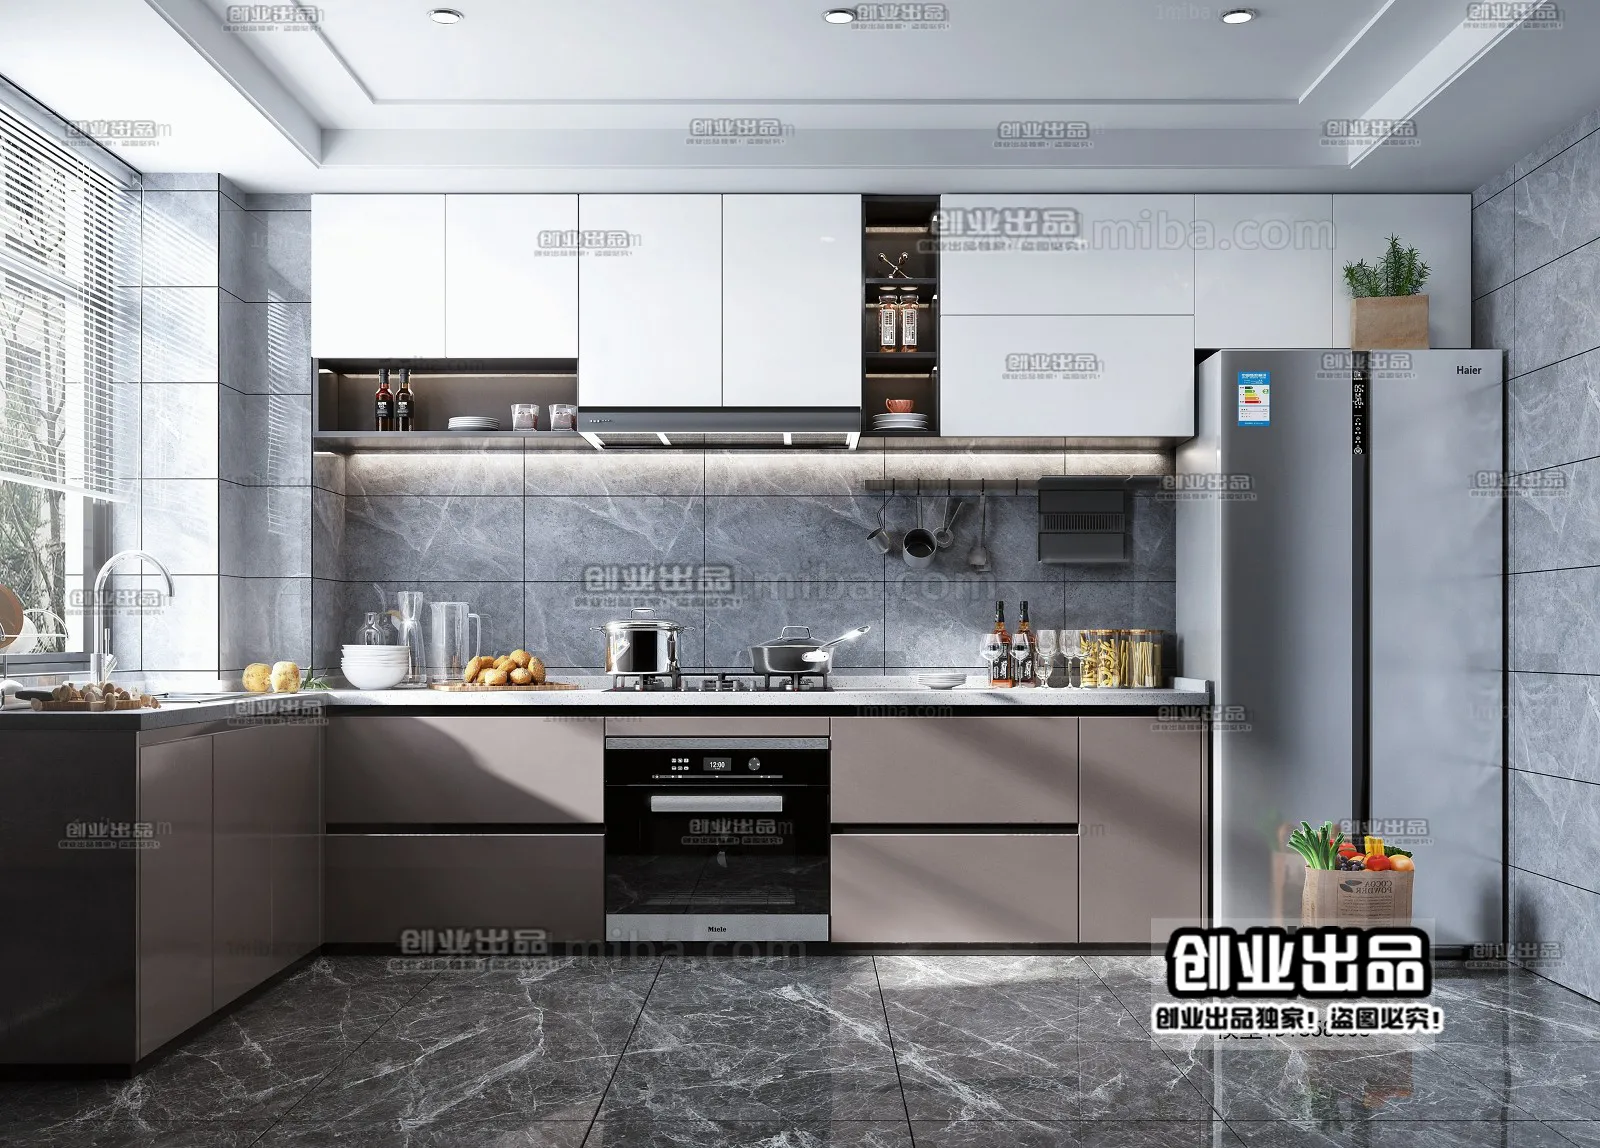 Kitchen – Modern Interior Design – 3D Models – 036